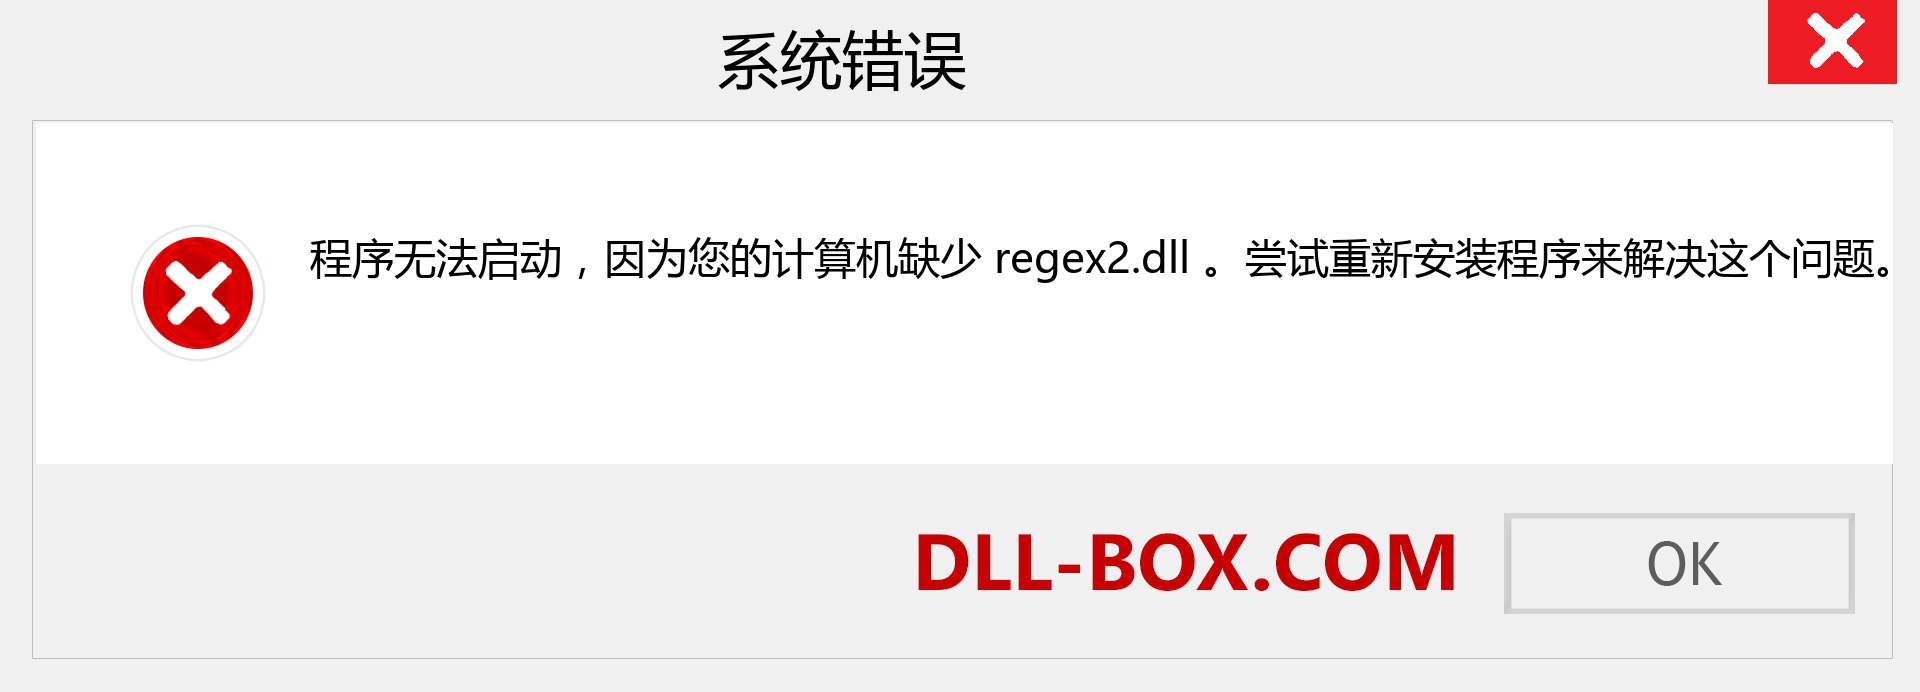 regex2.dll 文件丢失？。 适用于 Windows 7、8、10 的下载 - 修复 Windows、照片、图像上的 regex2 dll 丢失错误